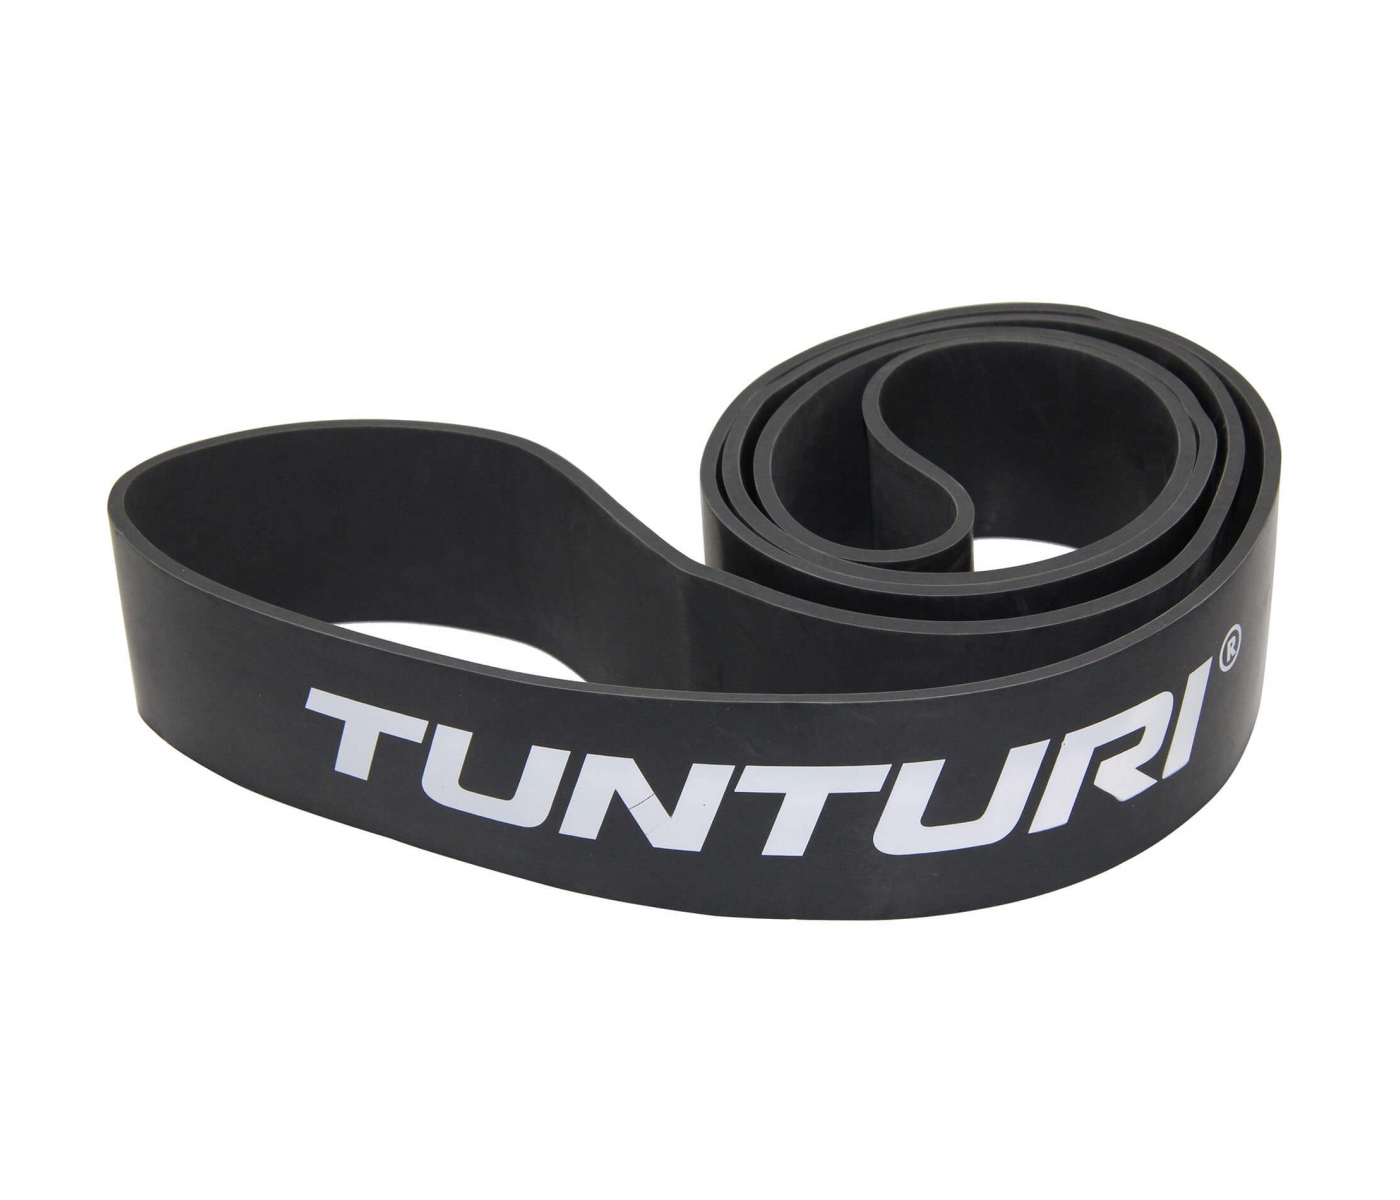 Brug Tunturi Power Band Extra Hård til en forbedret oplevelse